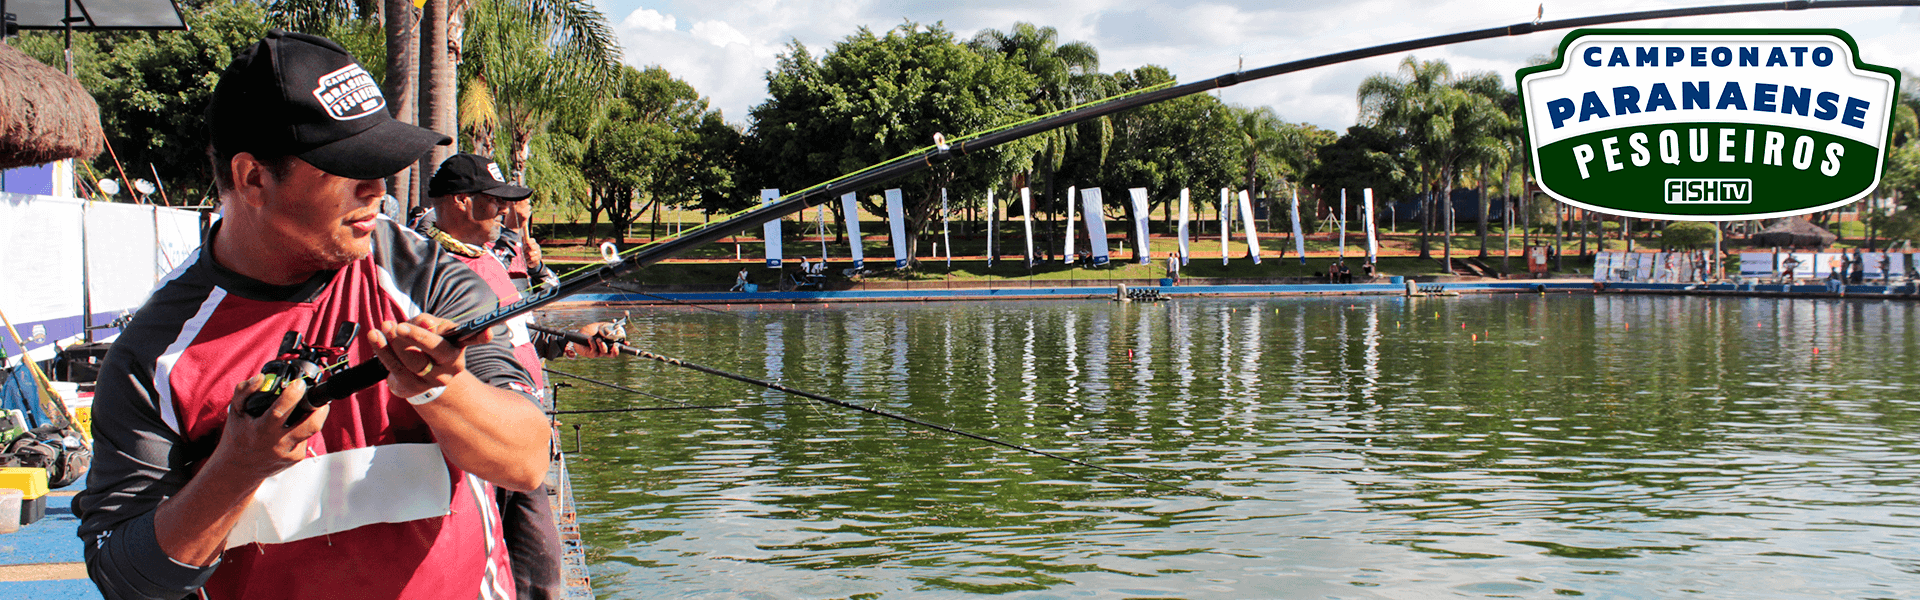 Mandirituba sedia maior campeonato de pesca esportiva do Paraná